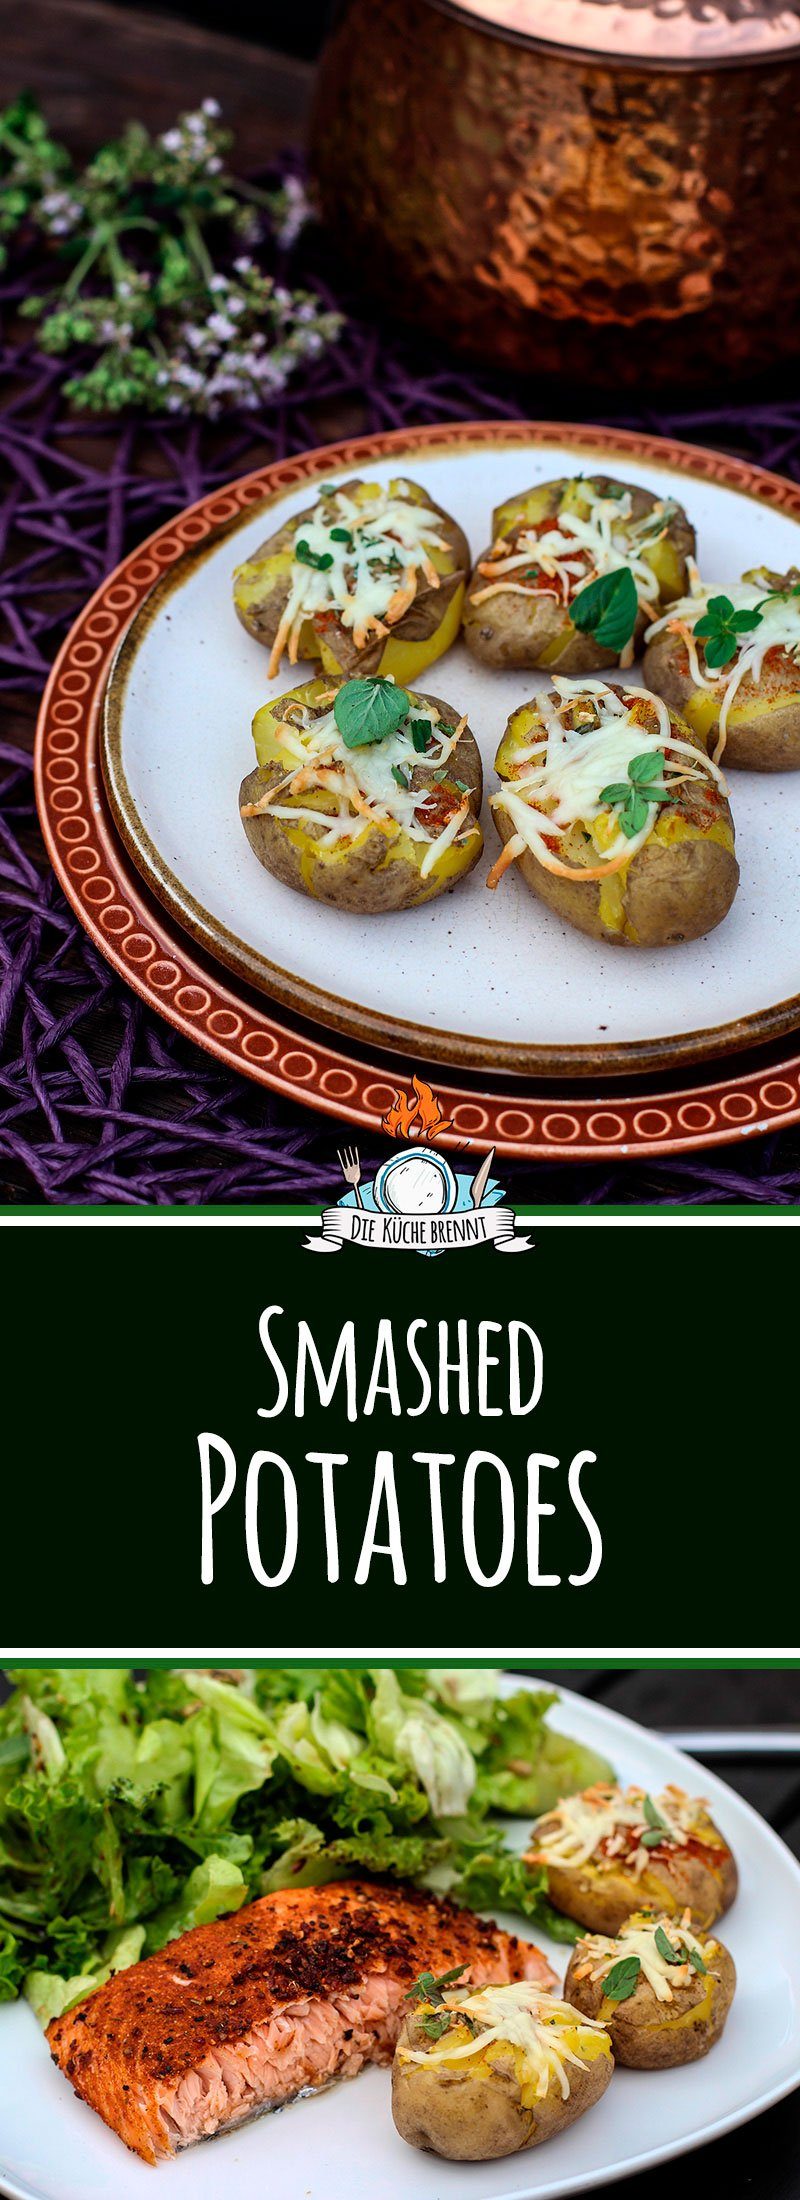 Smashed Potatoes Rezept - Zerstampfte Kartoffeln vom Grill